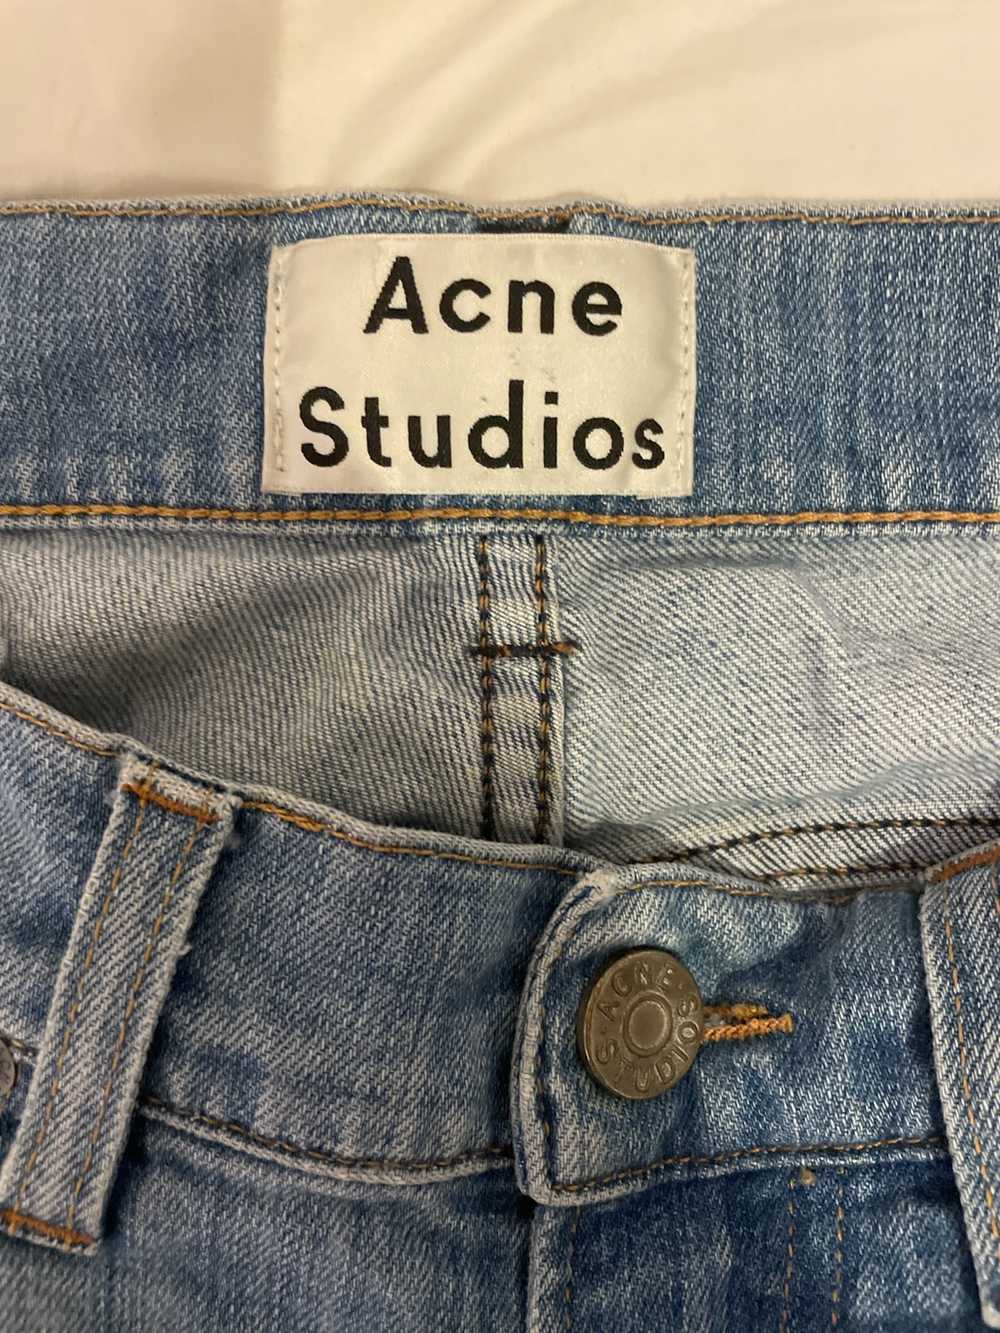 Acne Studios Ace Light Vintage Denim Jeans - image 4